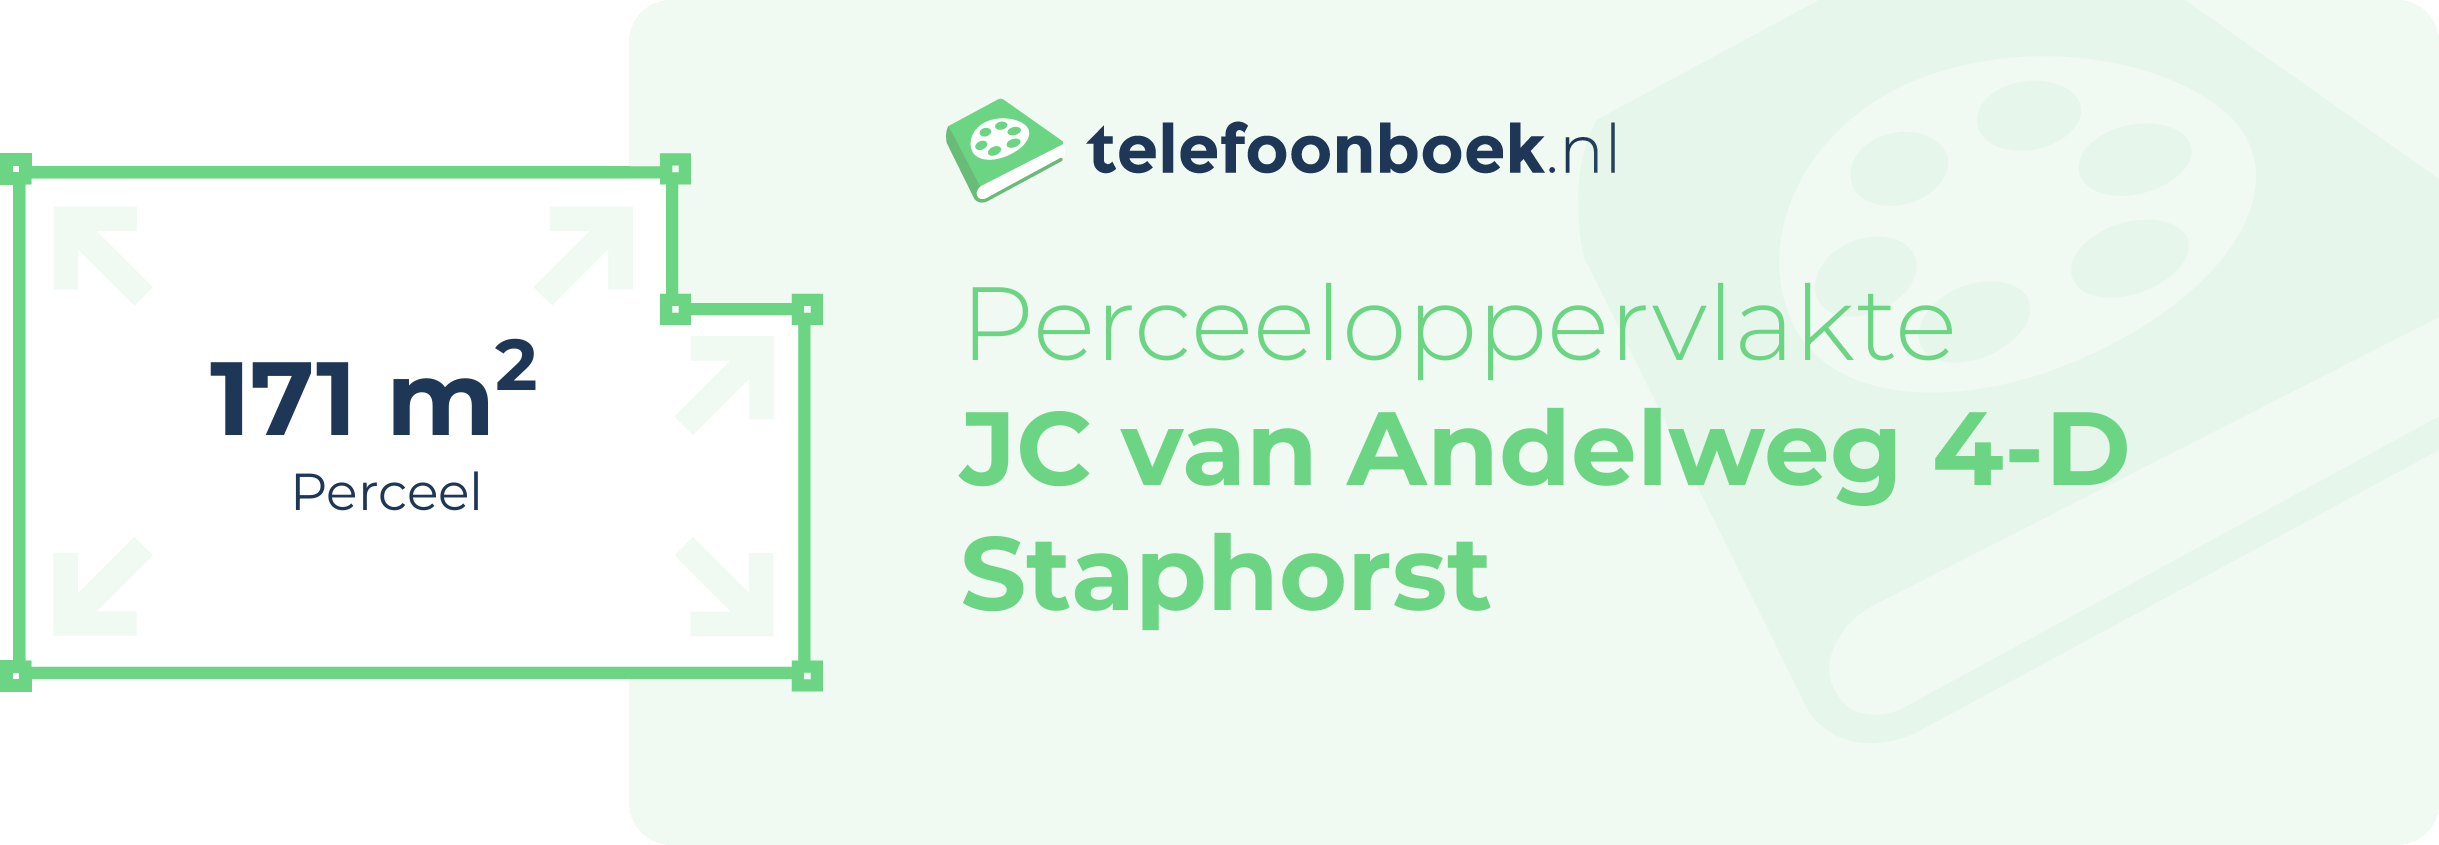 Perceeloppervlakte JC Van Andelweg 4-D Staphorst